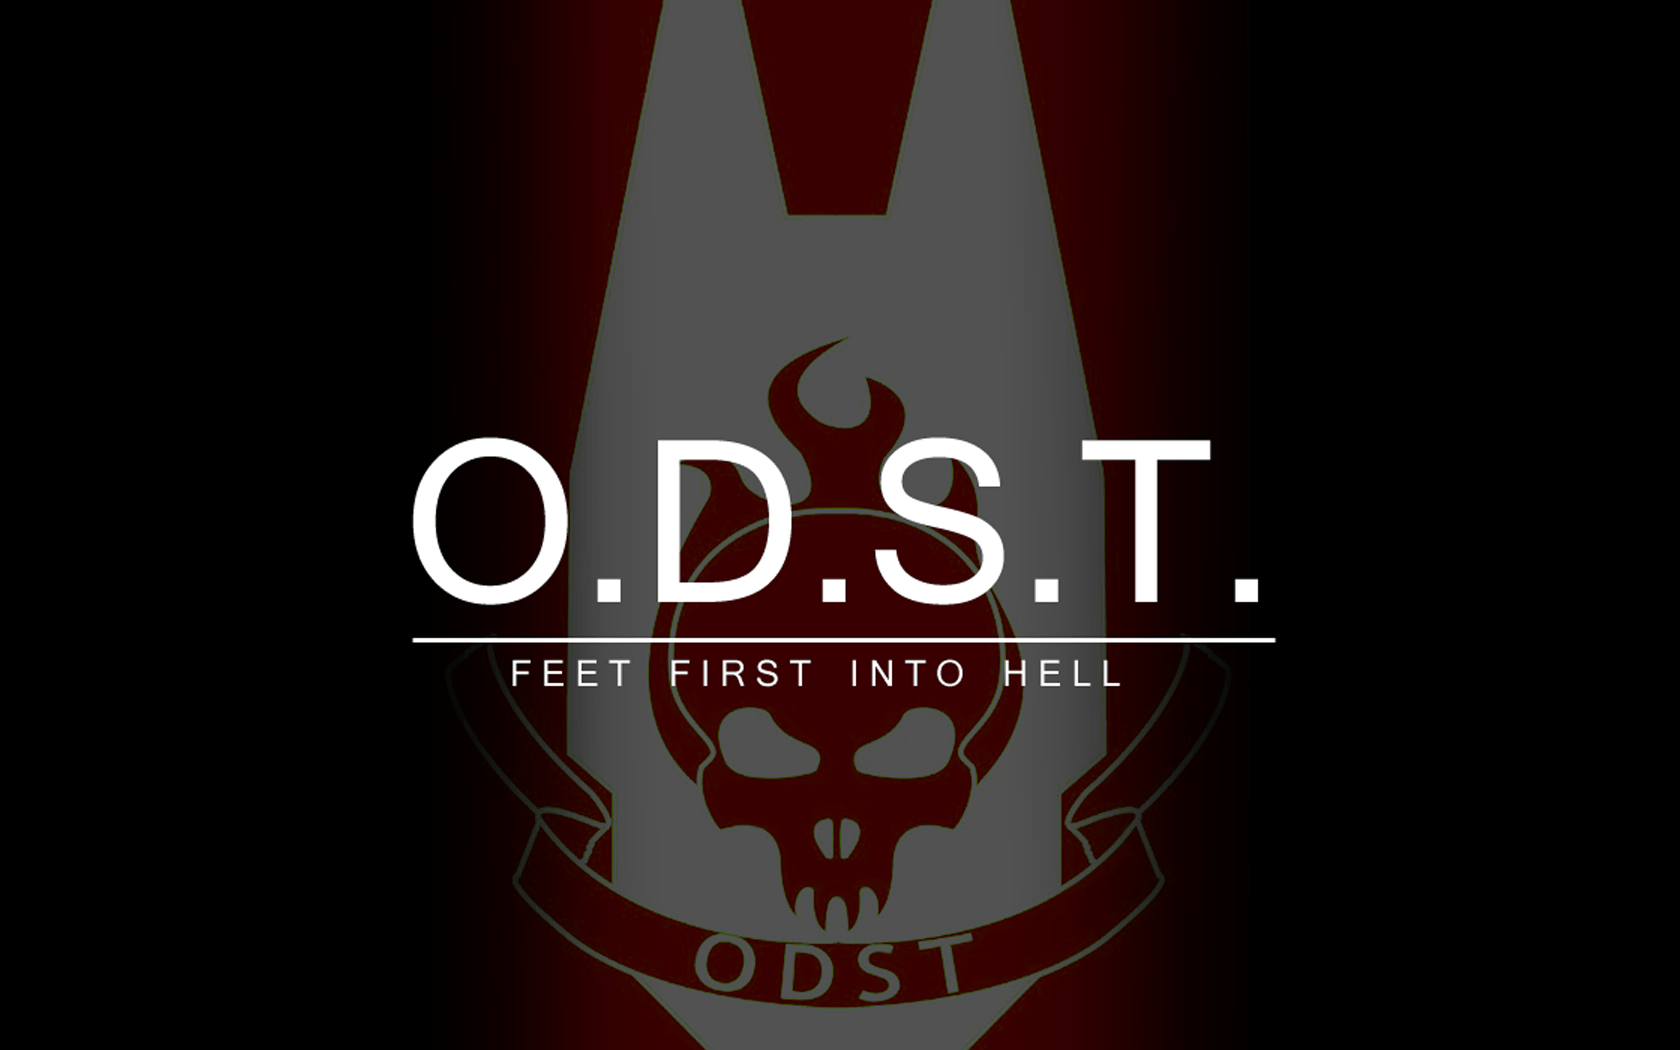 ODST Logo - Wallpaper : illustration, text, logo, poster, brand, ODST, font ...